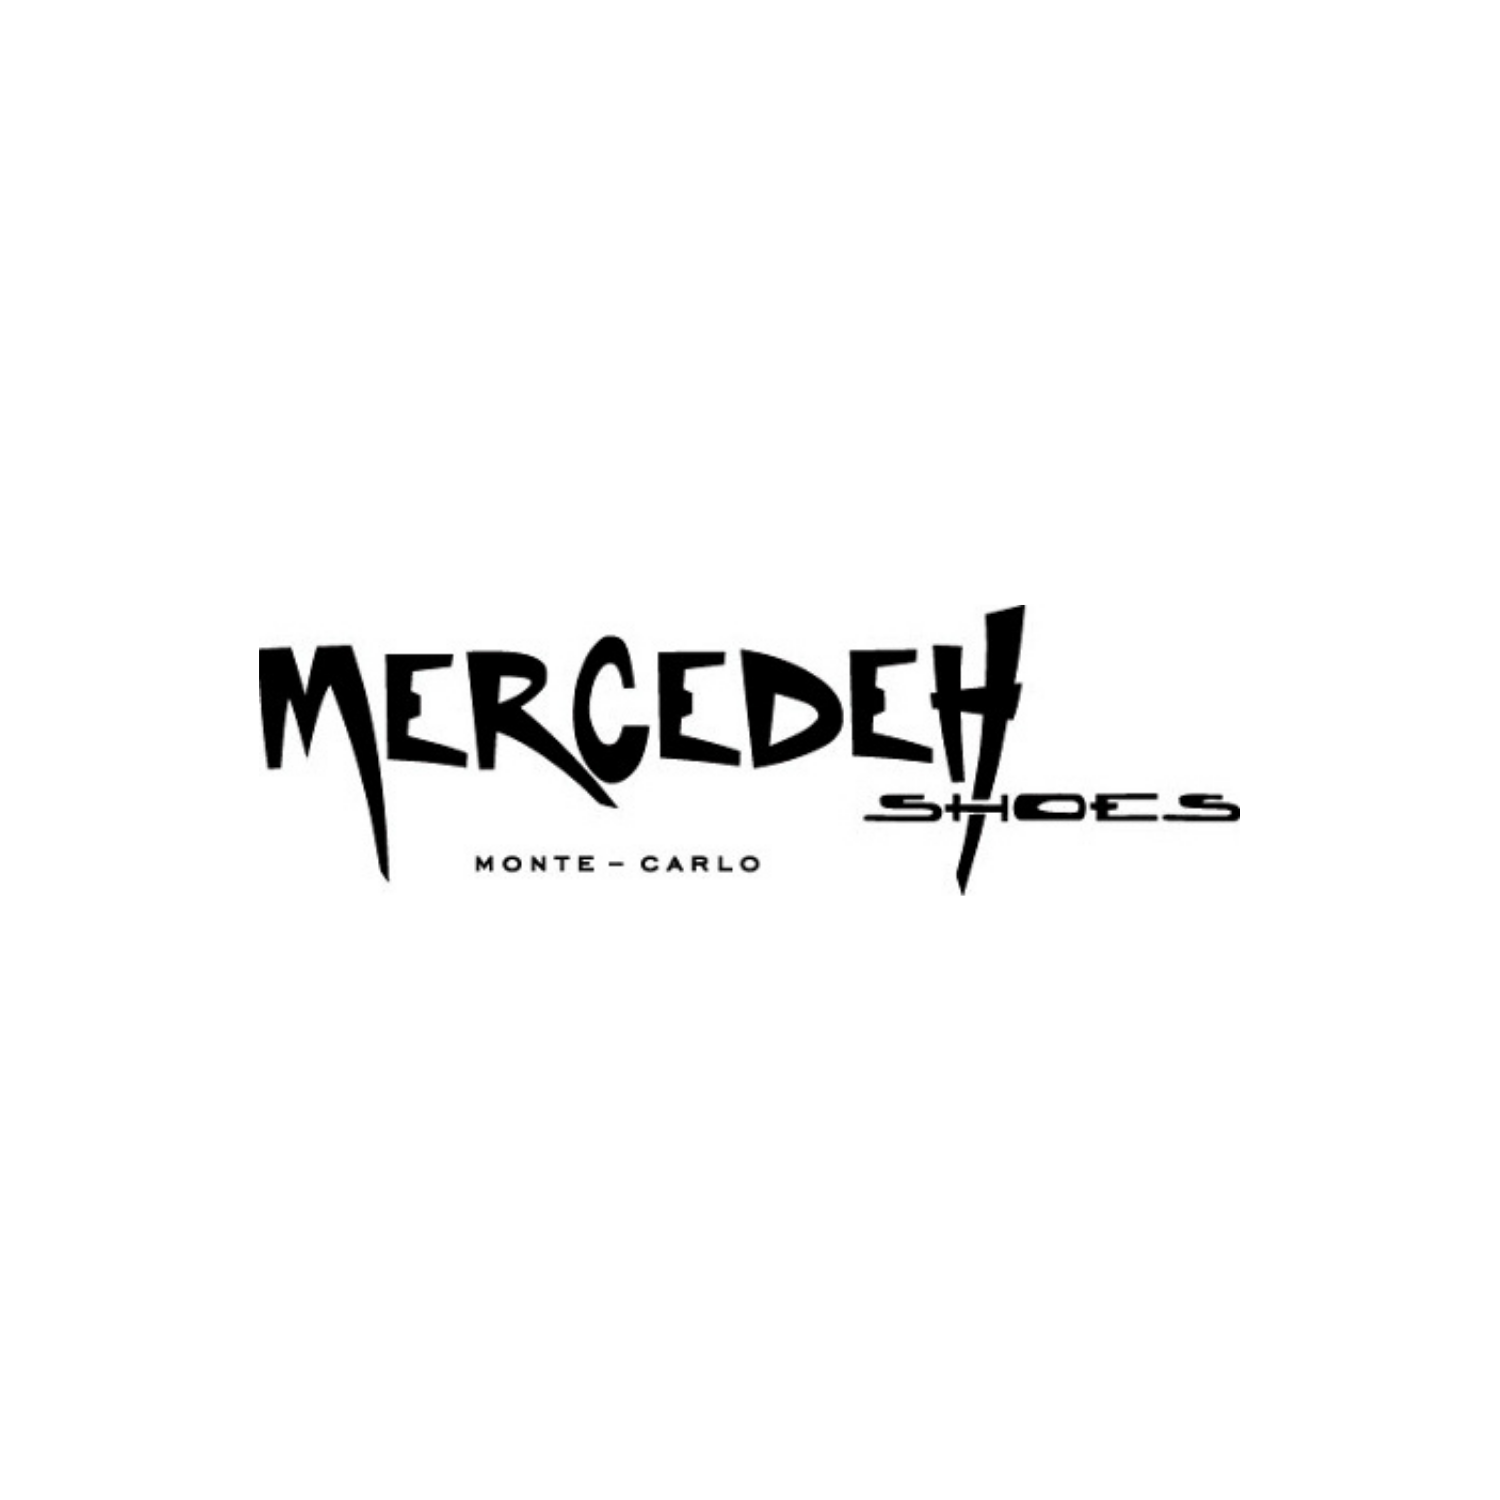 mercedeh-monaco-carlo-app-retailer-shoe